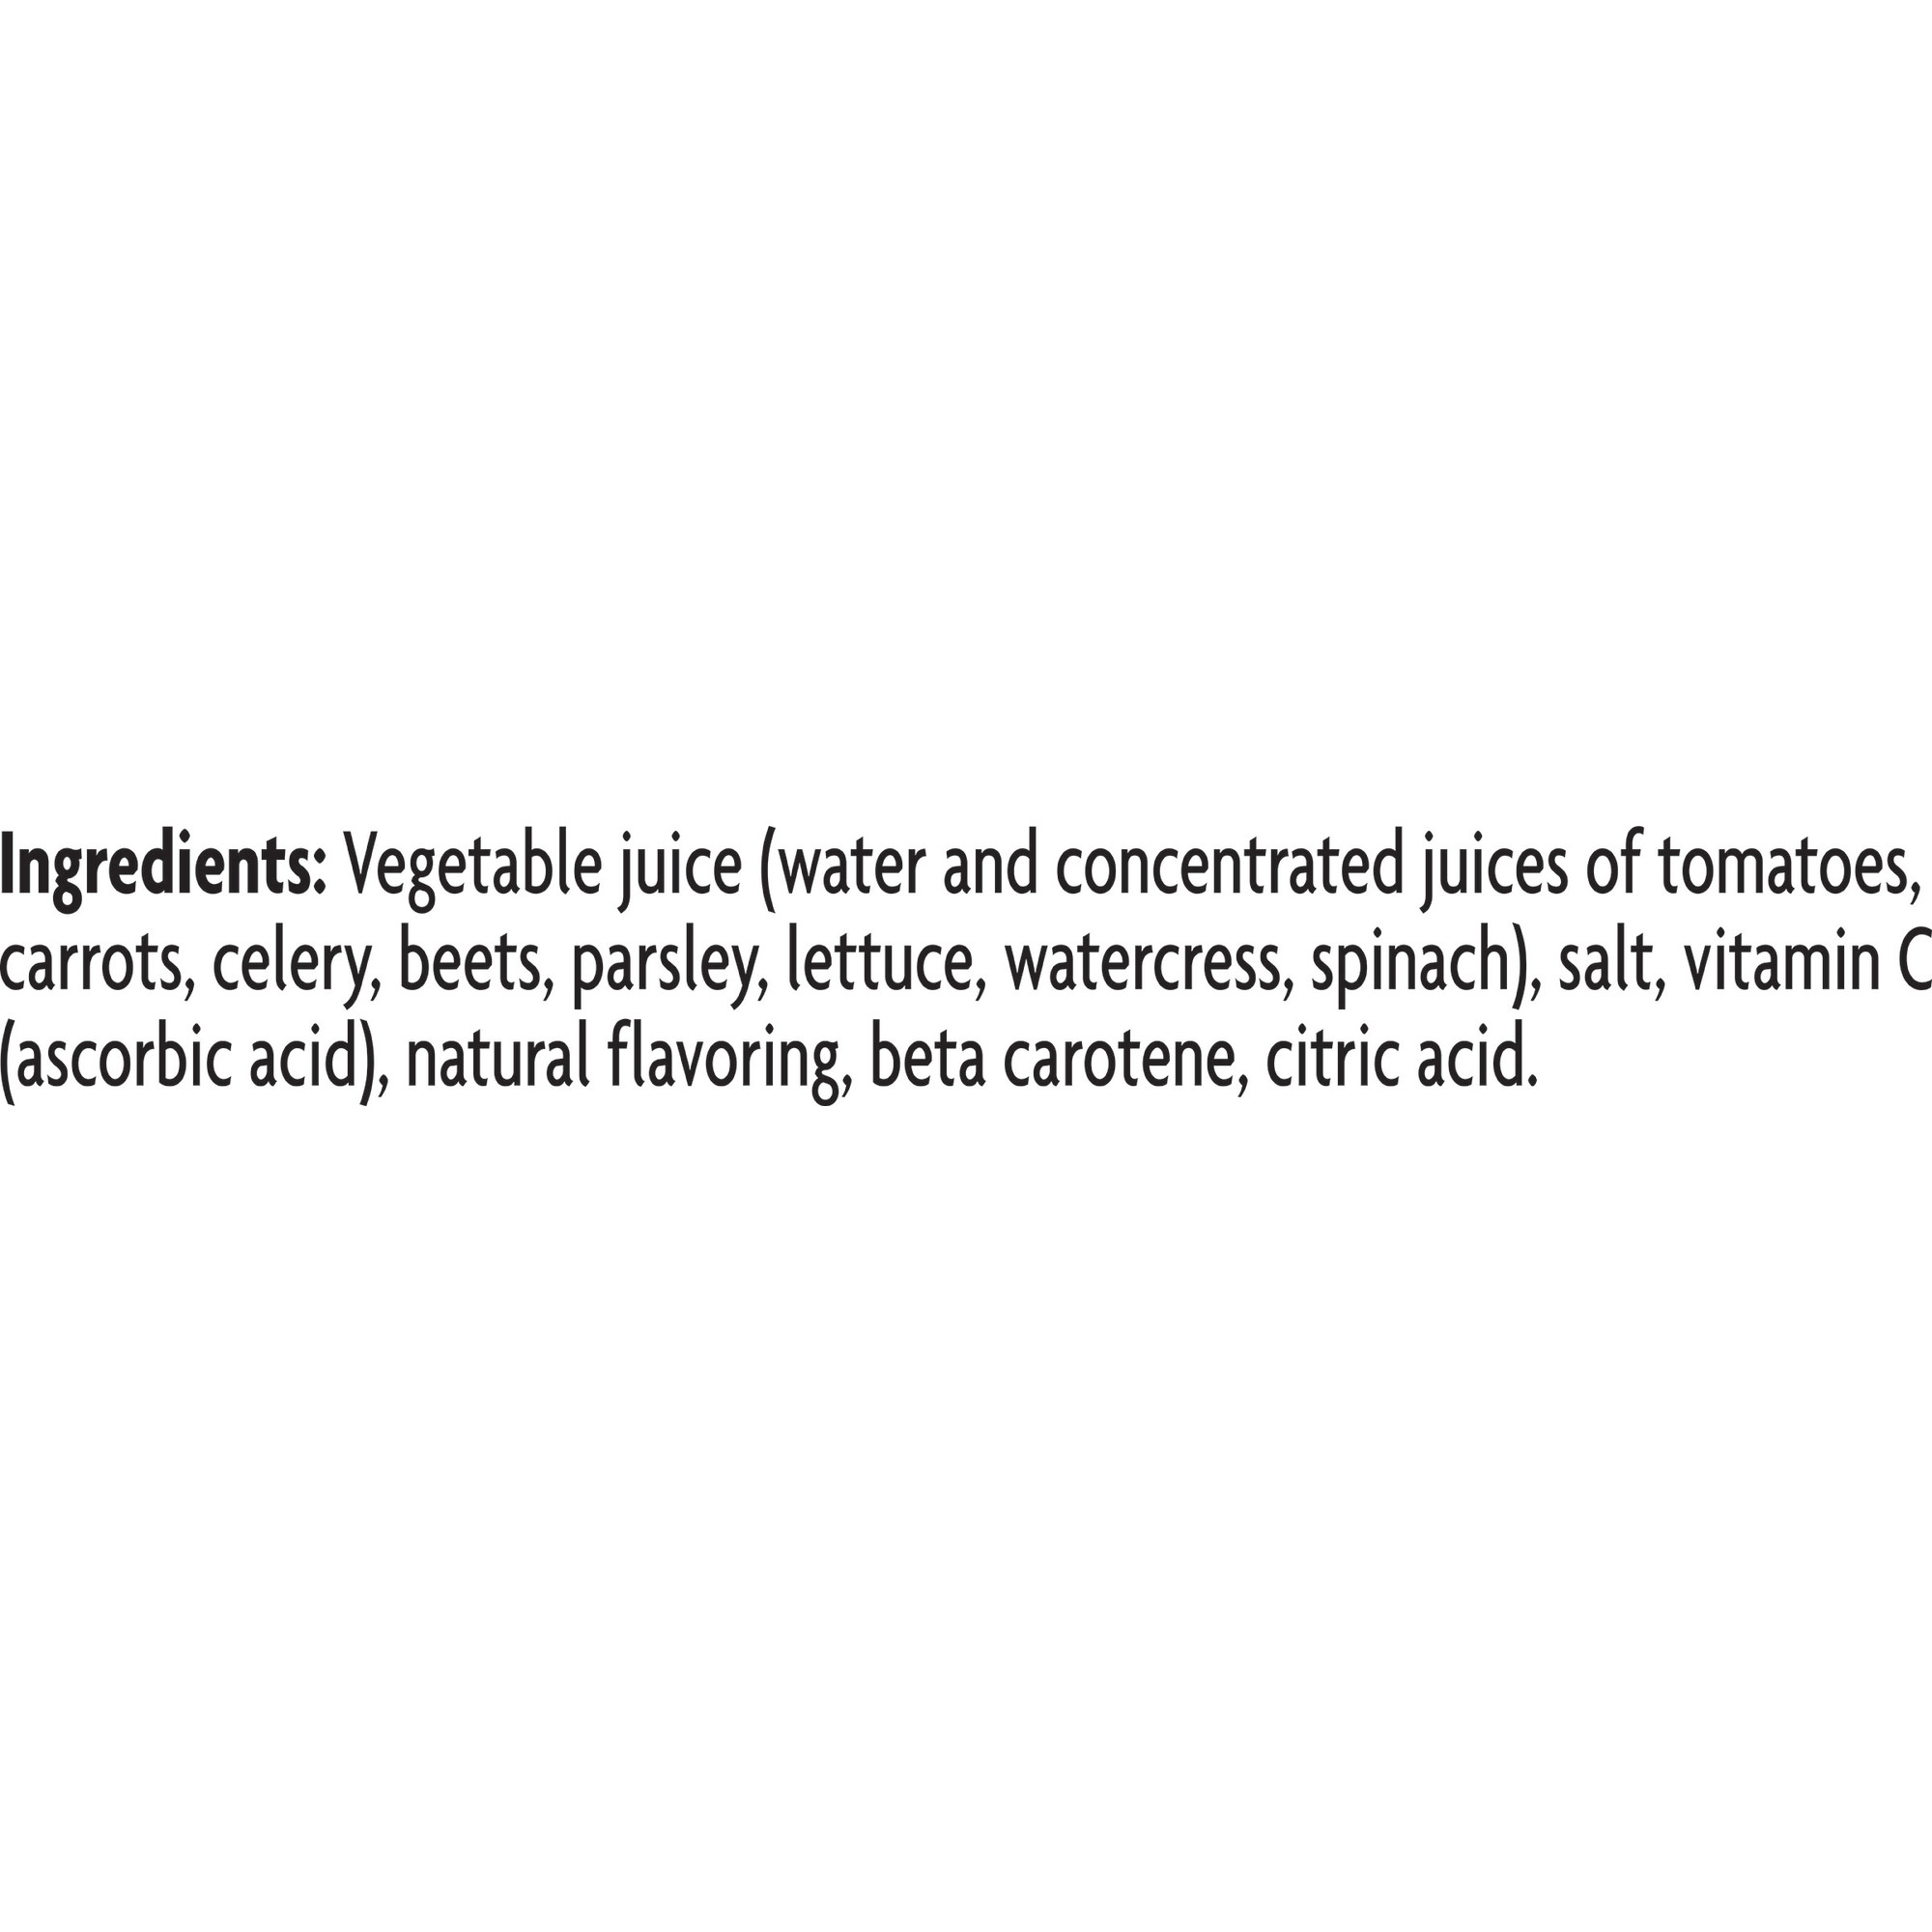 V8 Original 100% Vegetable Juice, 64 fl oz Bottle - image 3 of 7